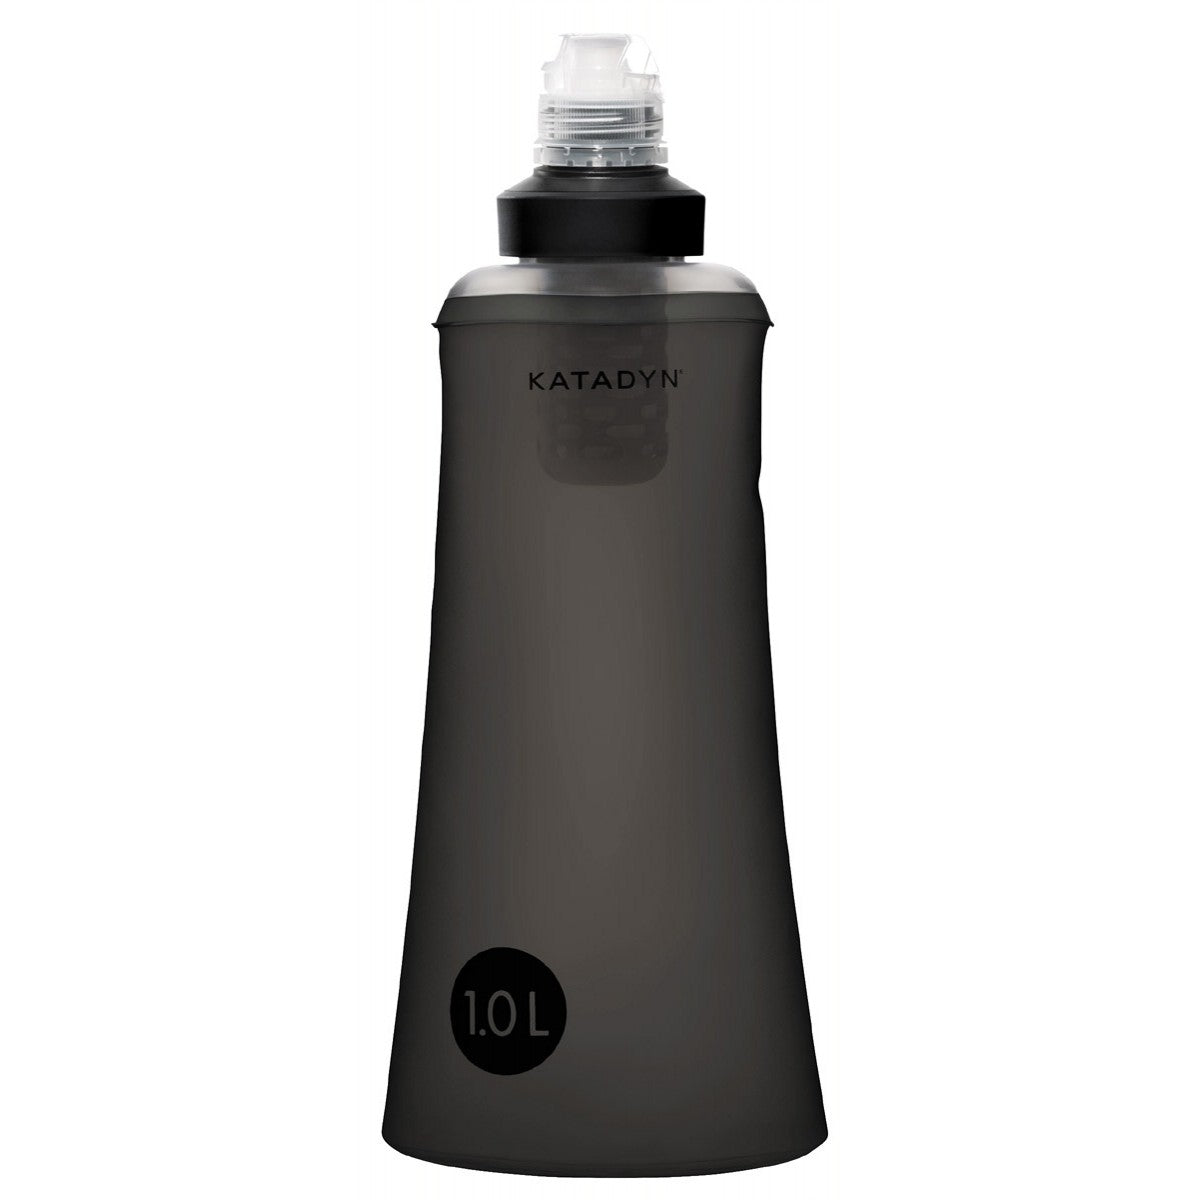 Vandringskit Premium Katadyn vattenfilter med flaskpåse och taktiskt bälte